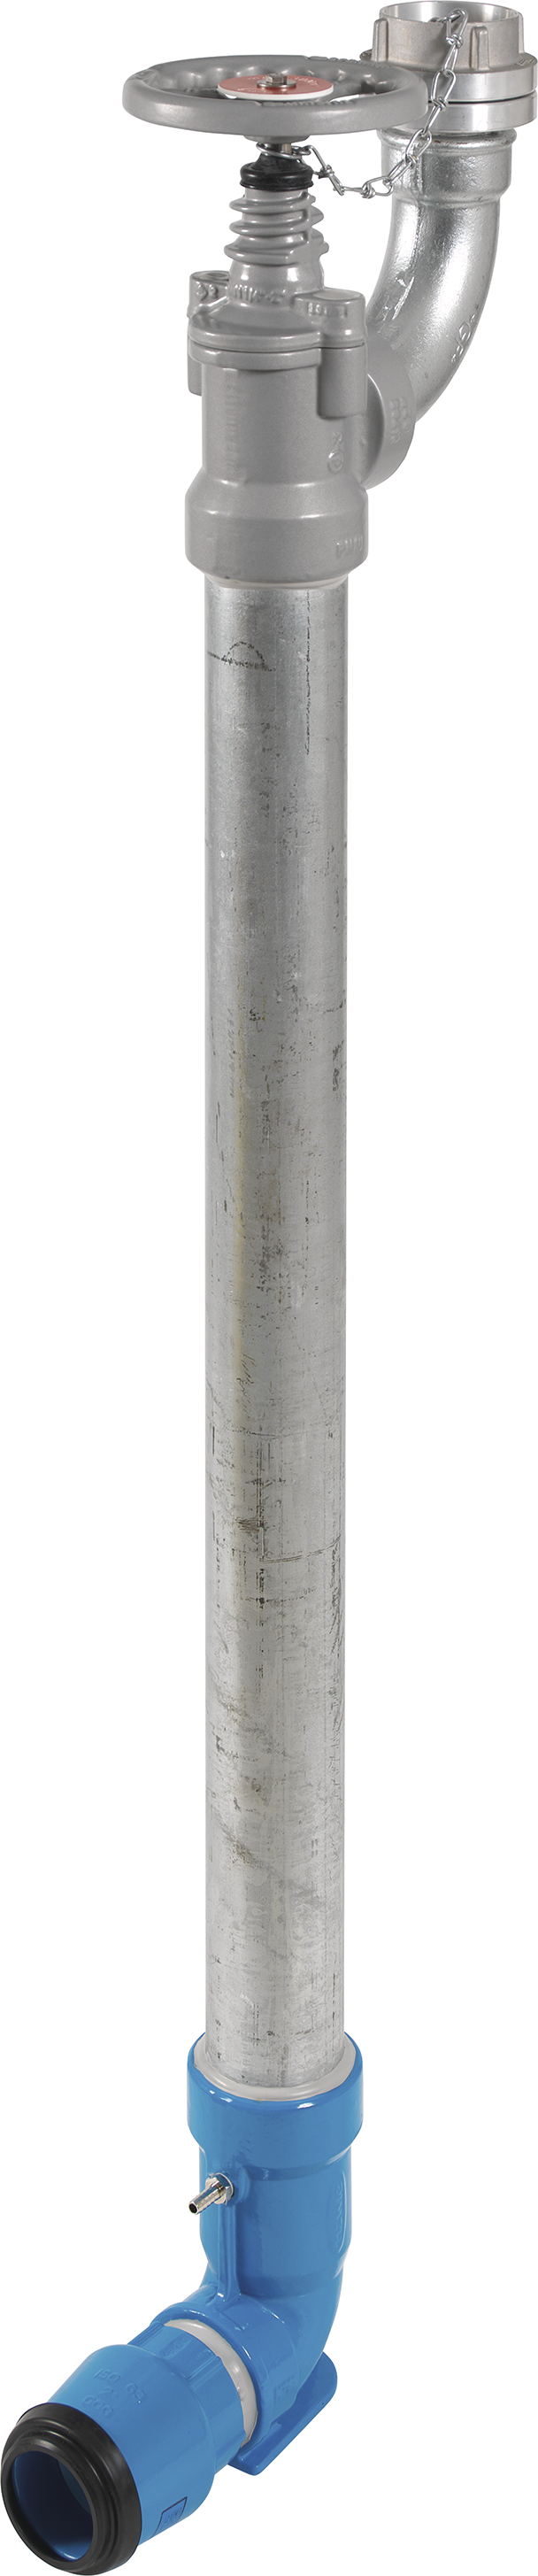 Bewässerungshydrant Unterflur N767 d 50mm, L = 500mm - Hawle Hydranten